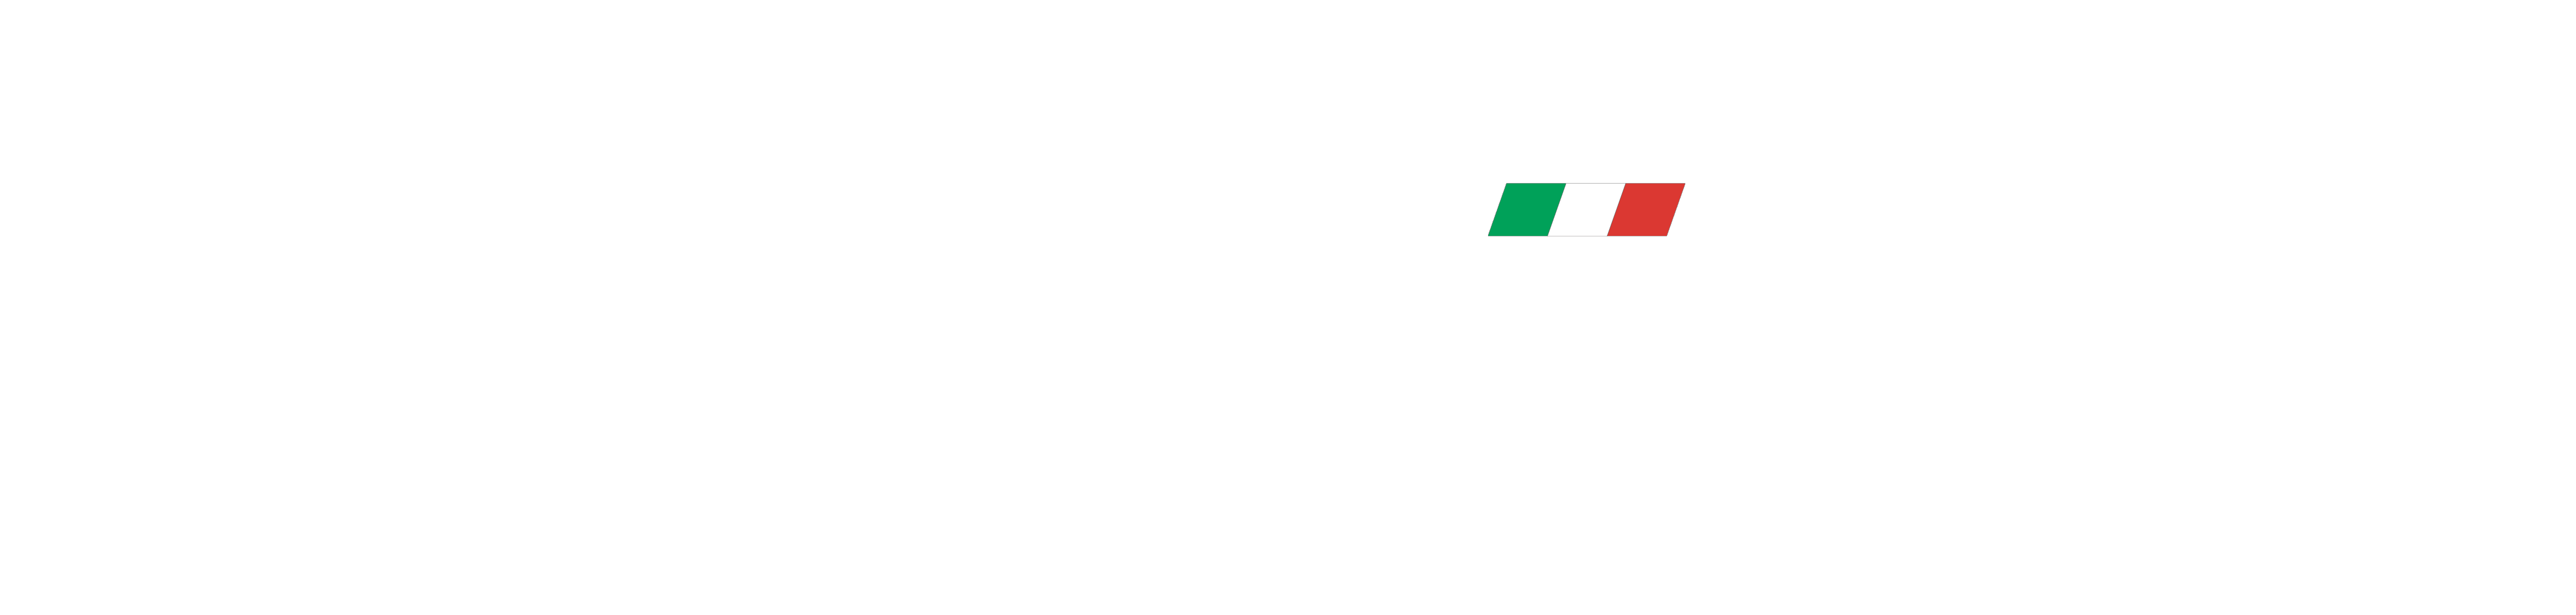 Formula Italia